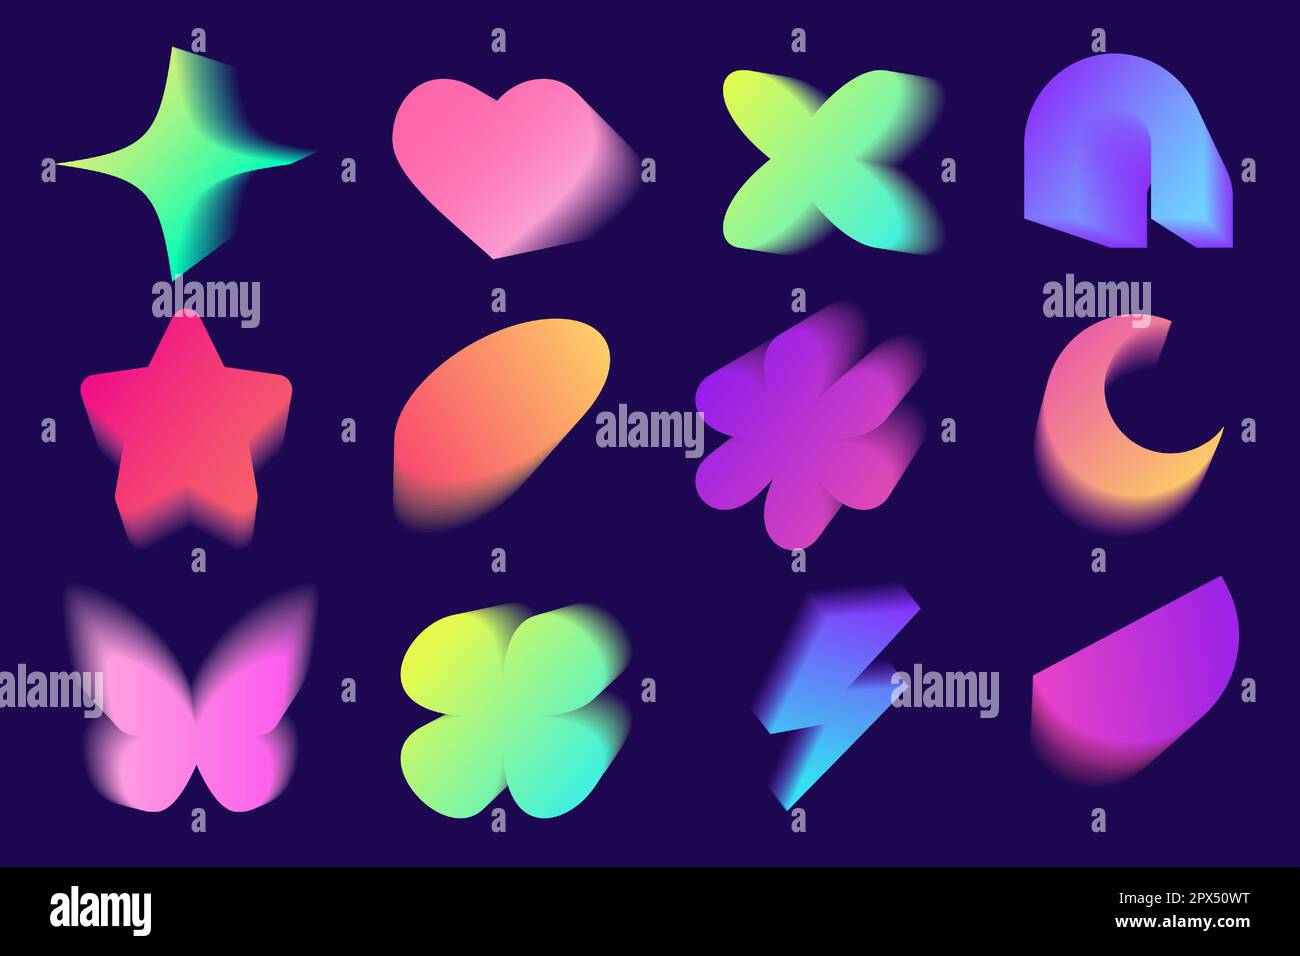 aesthetic y2k aura elements set. flower, blob, heart, butterfly